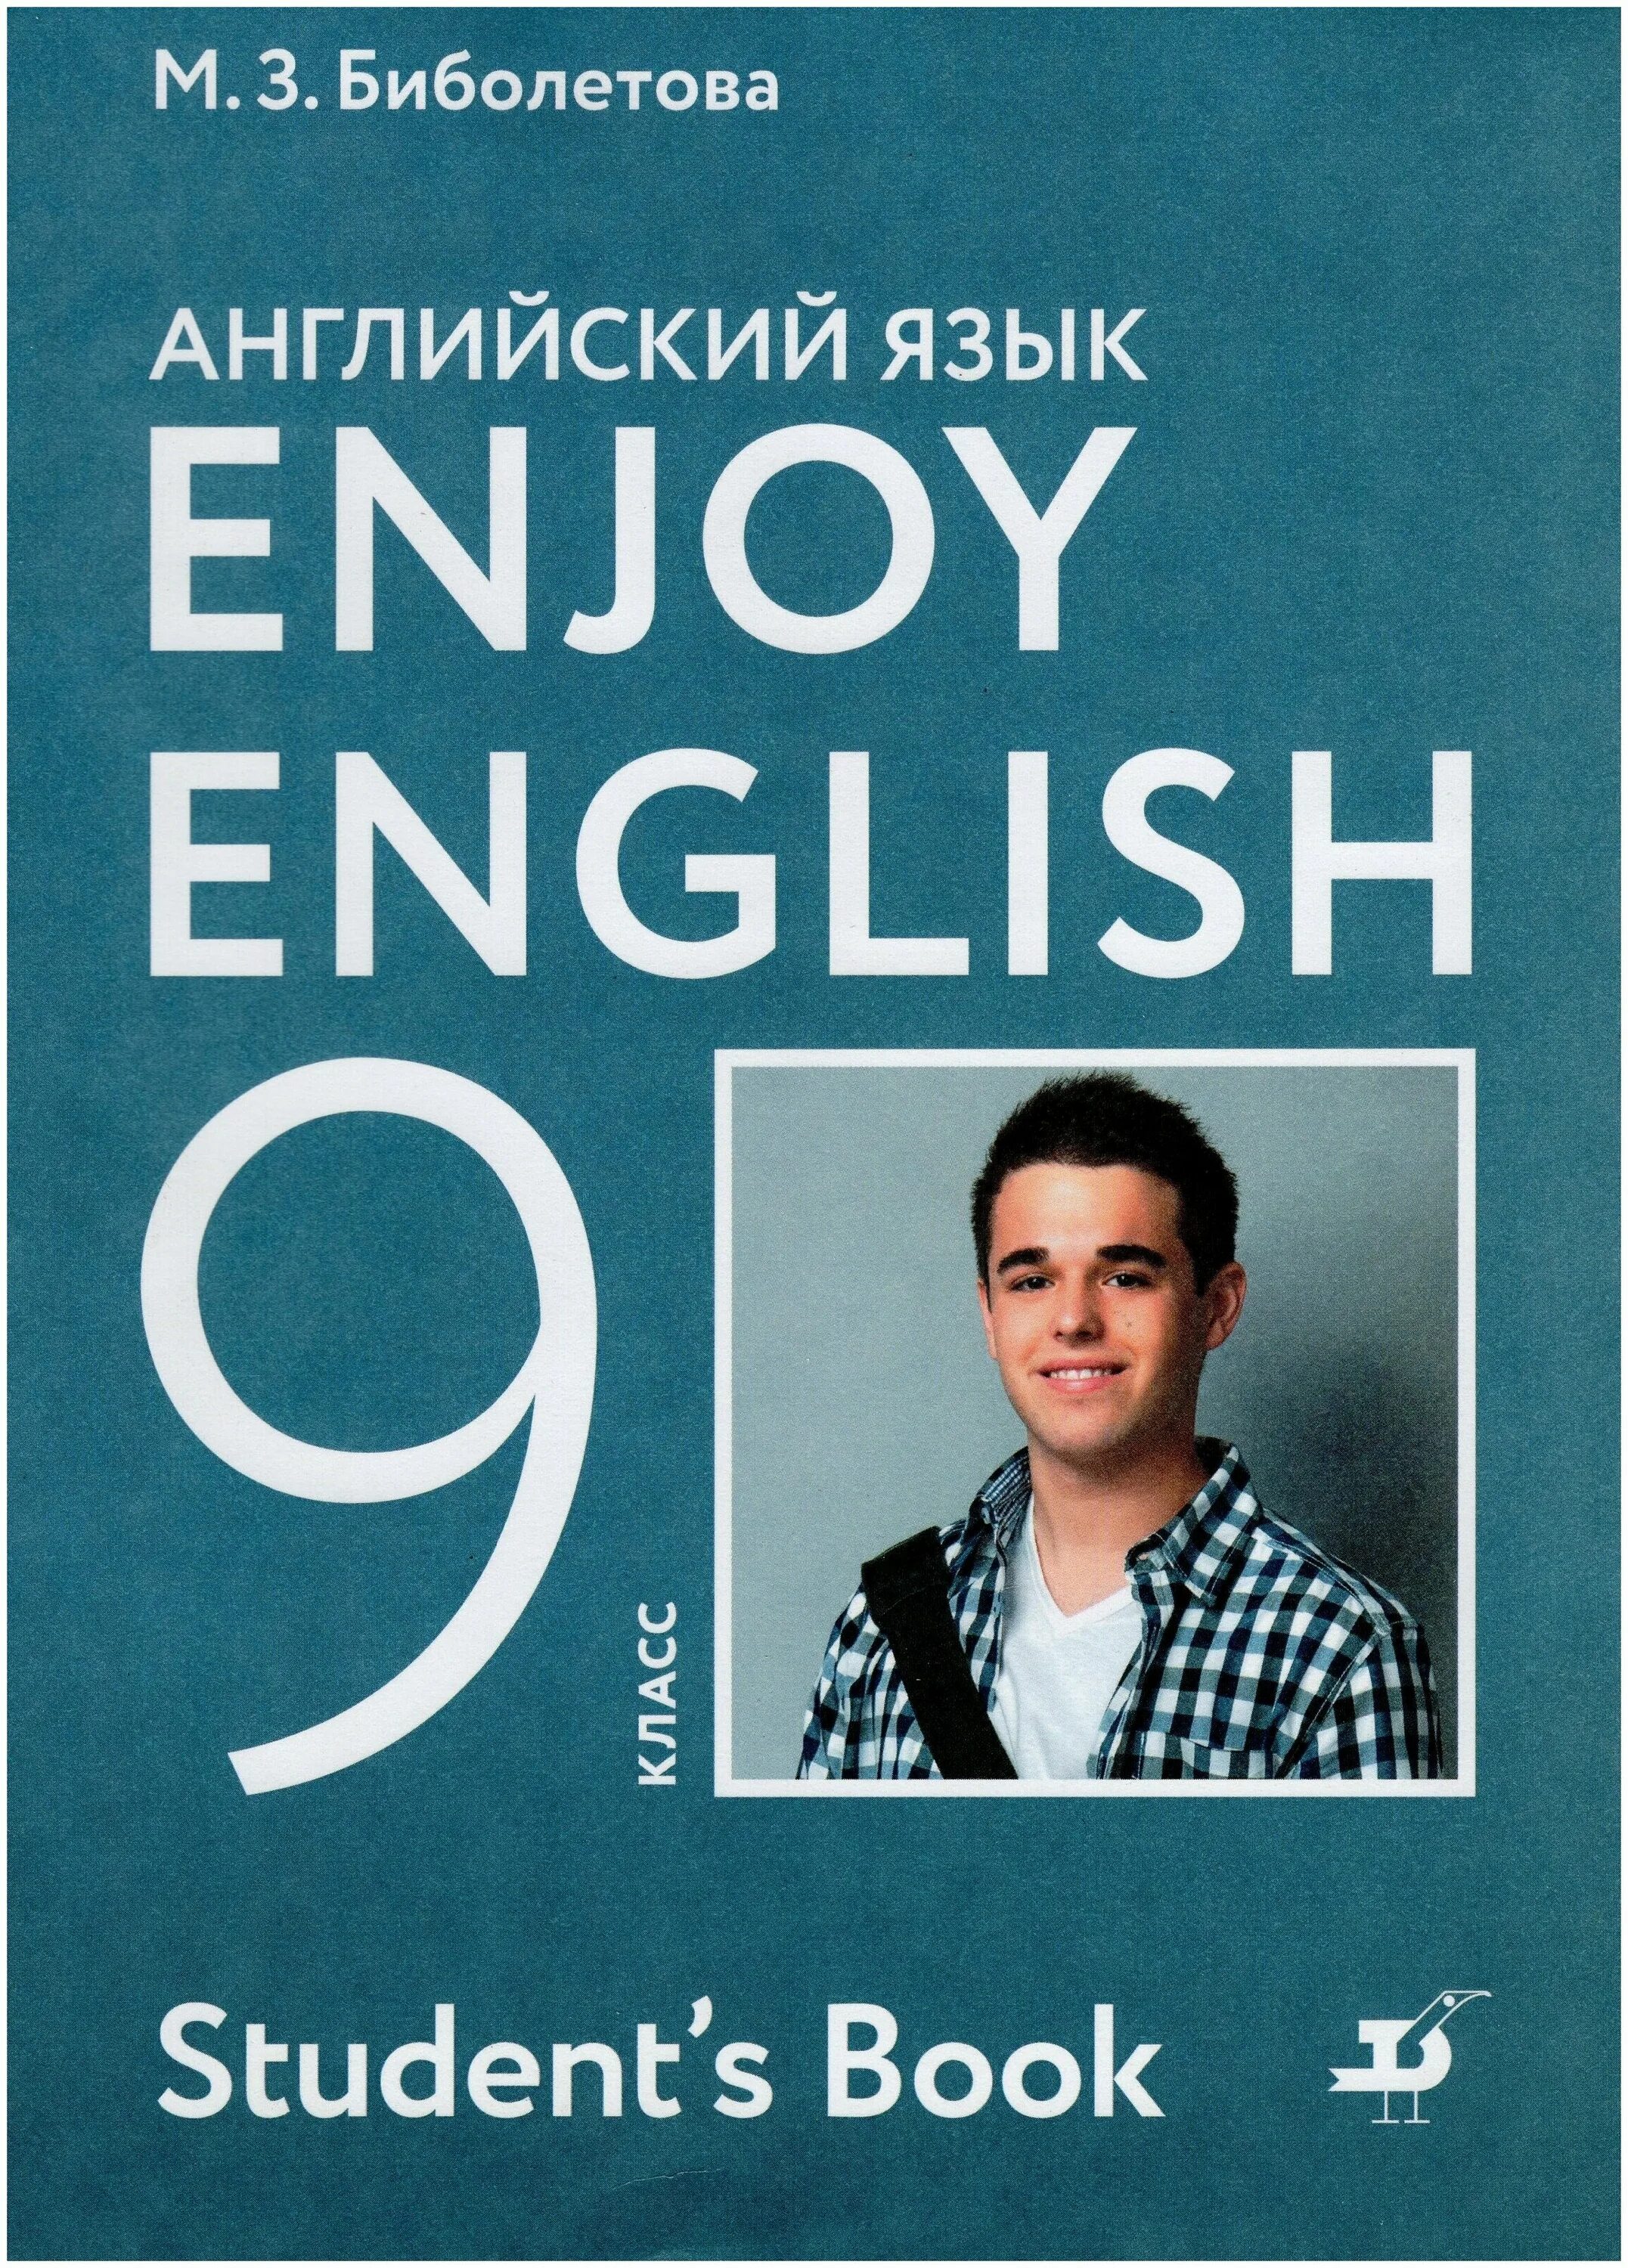 Английский 9 класс. Учебник английского языка 9 класс. Учебник enjoy English 9. Enjoy English 9 класс учебник биболетова. Английский язык учебник Биболетовой 9 кл.